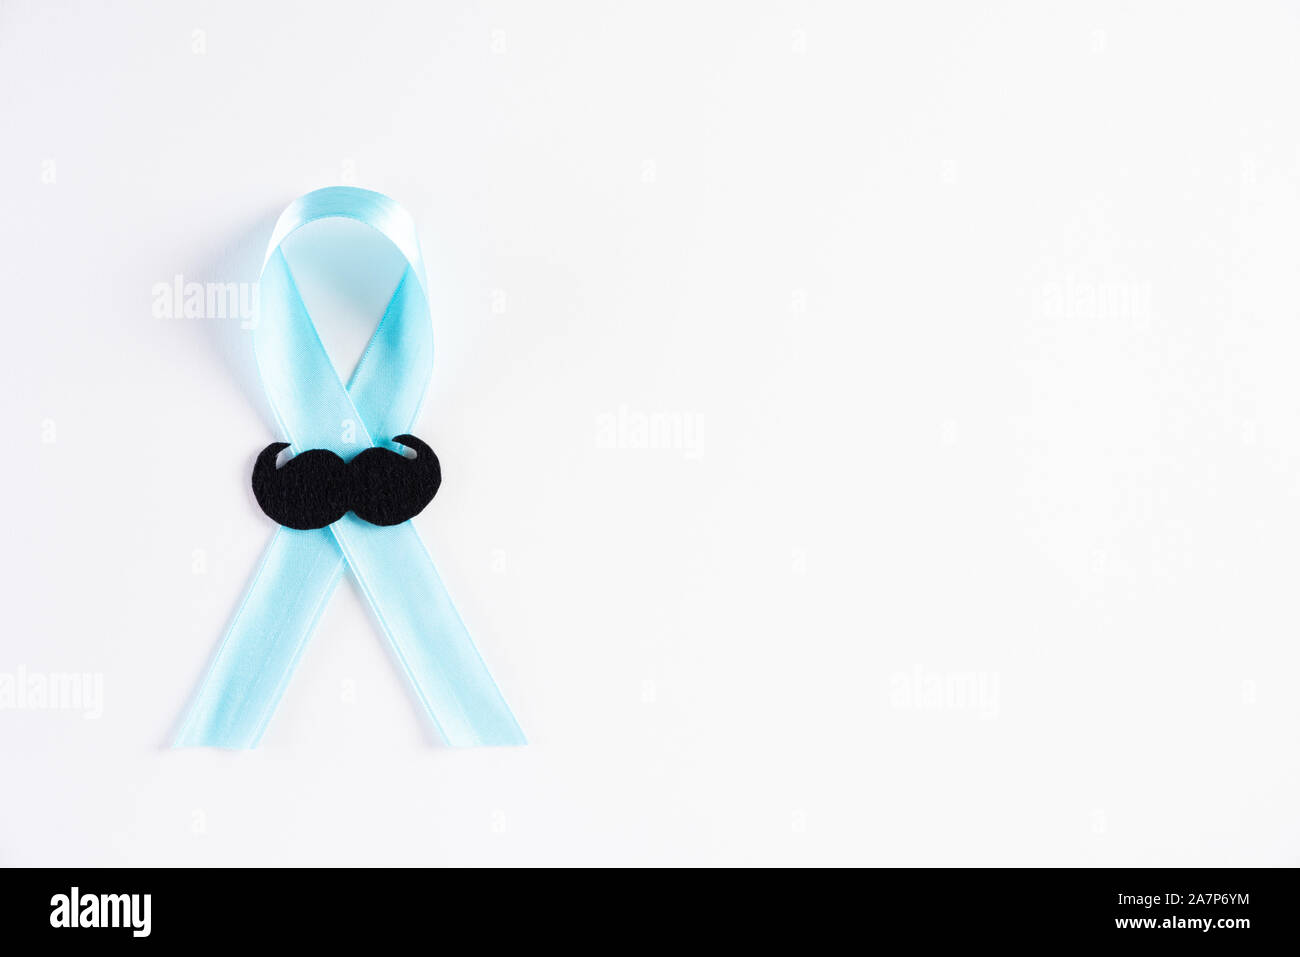 Nastro di colore blu con il crescente di baffi su sfondo bianco che rappresenta un evento annuale durante il mese di novembre per aumentare la consapevolezza di uomini h Foto Stock